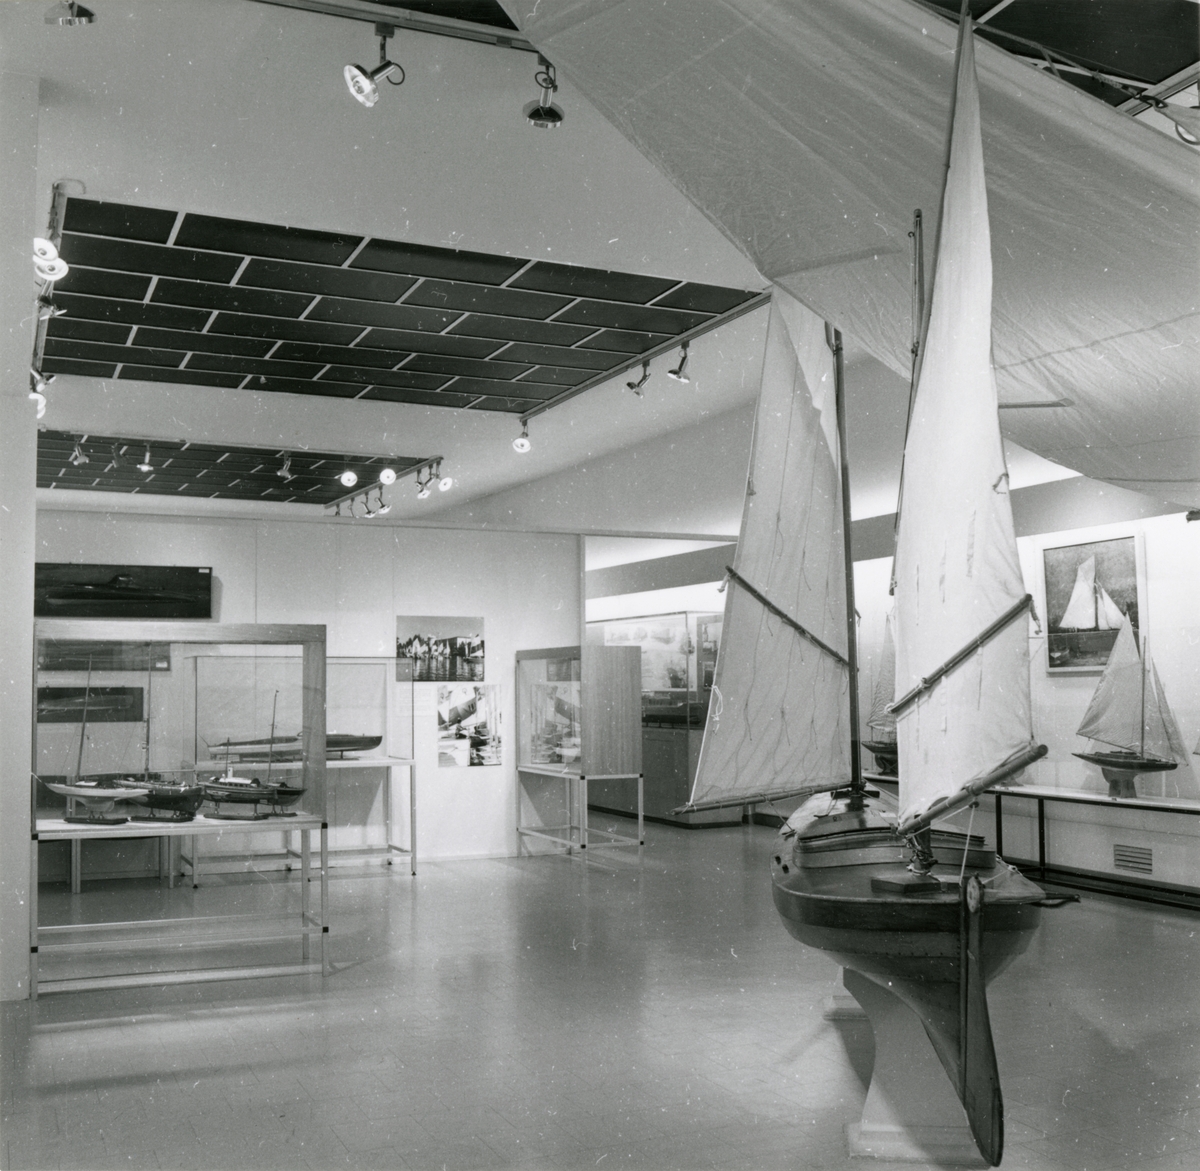 Utställningen "Fritidsbåtar på museum". Utställningsinteriör med segelkanoten CARMEN och fartygsmodeller.